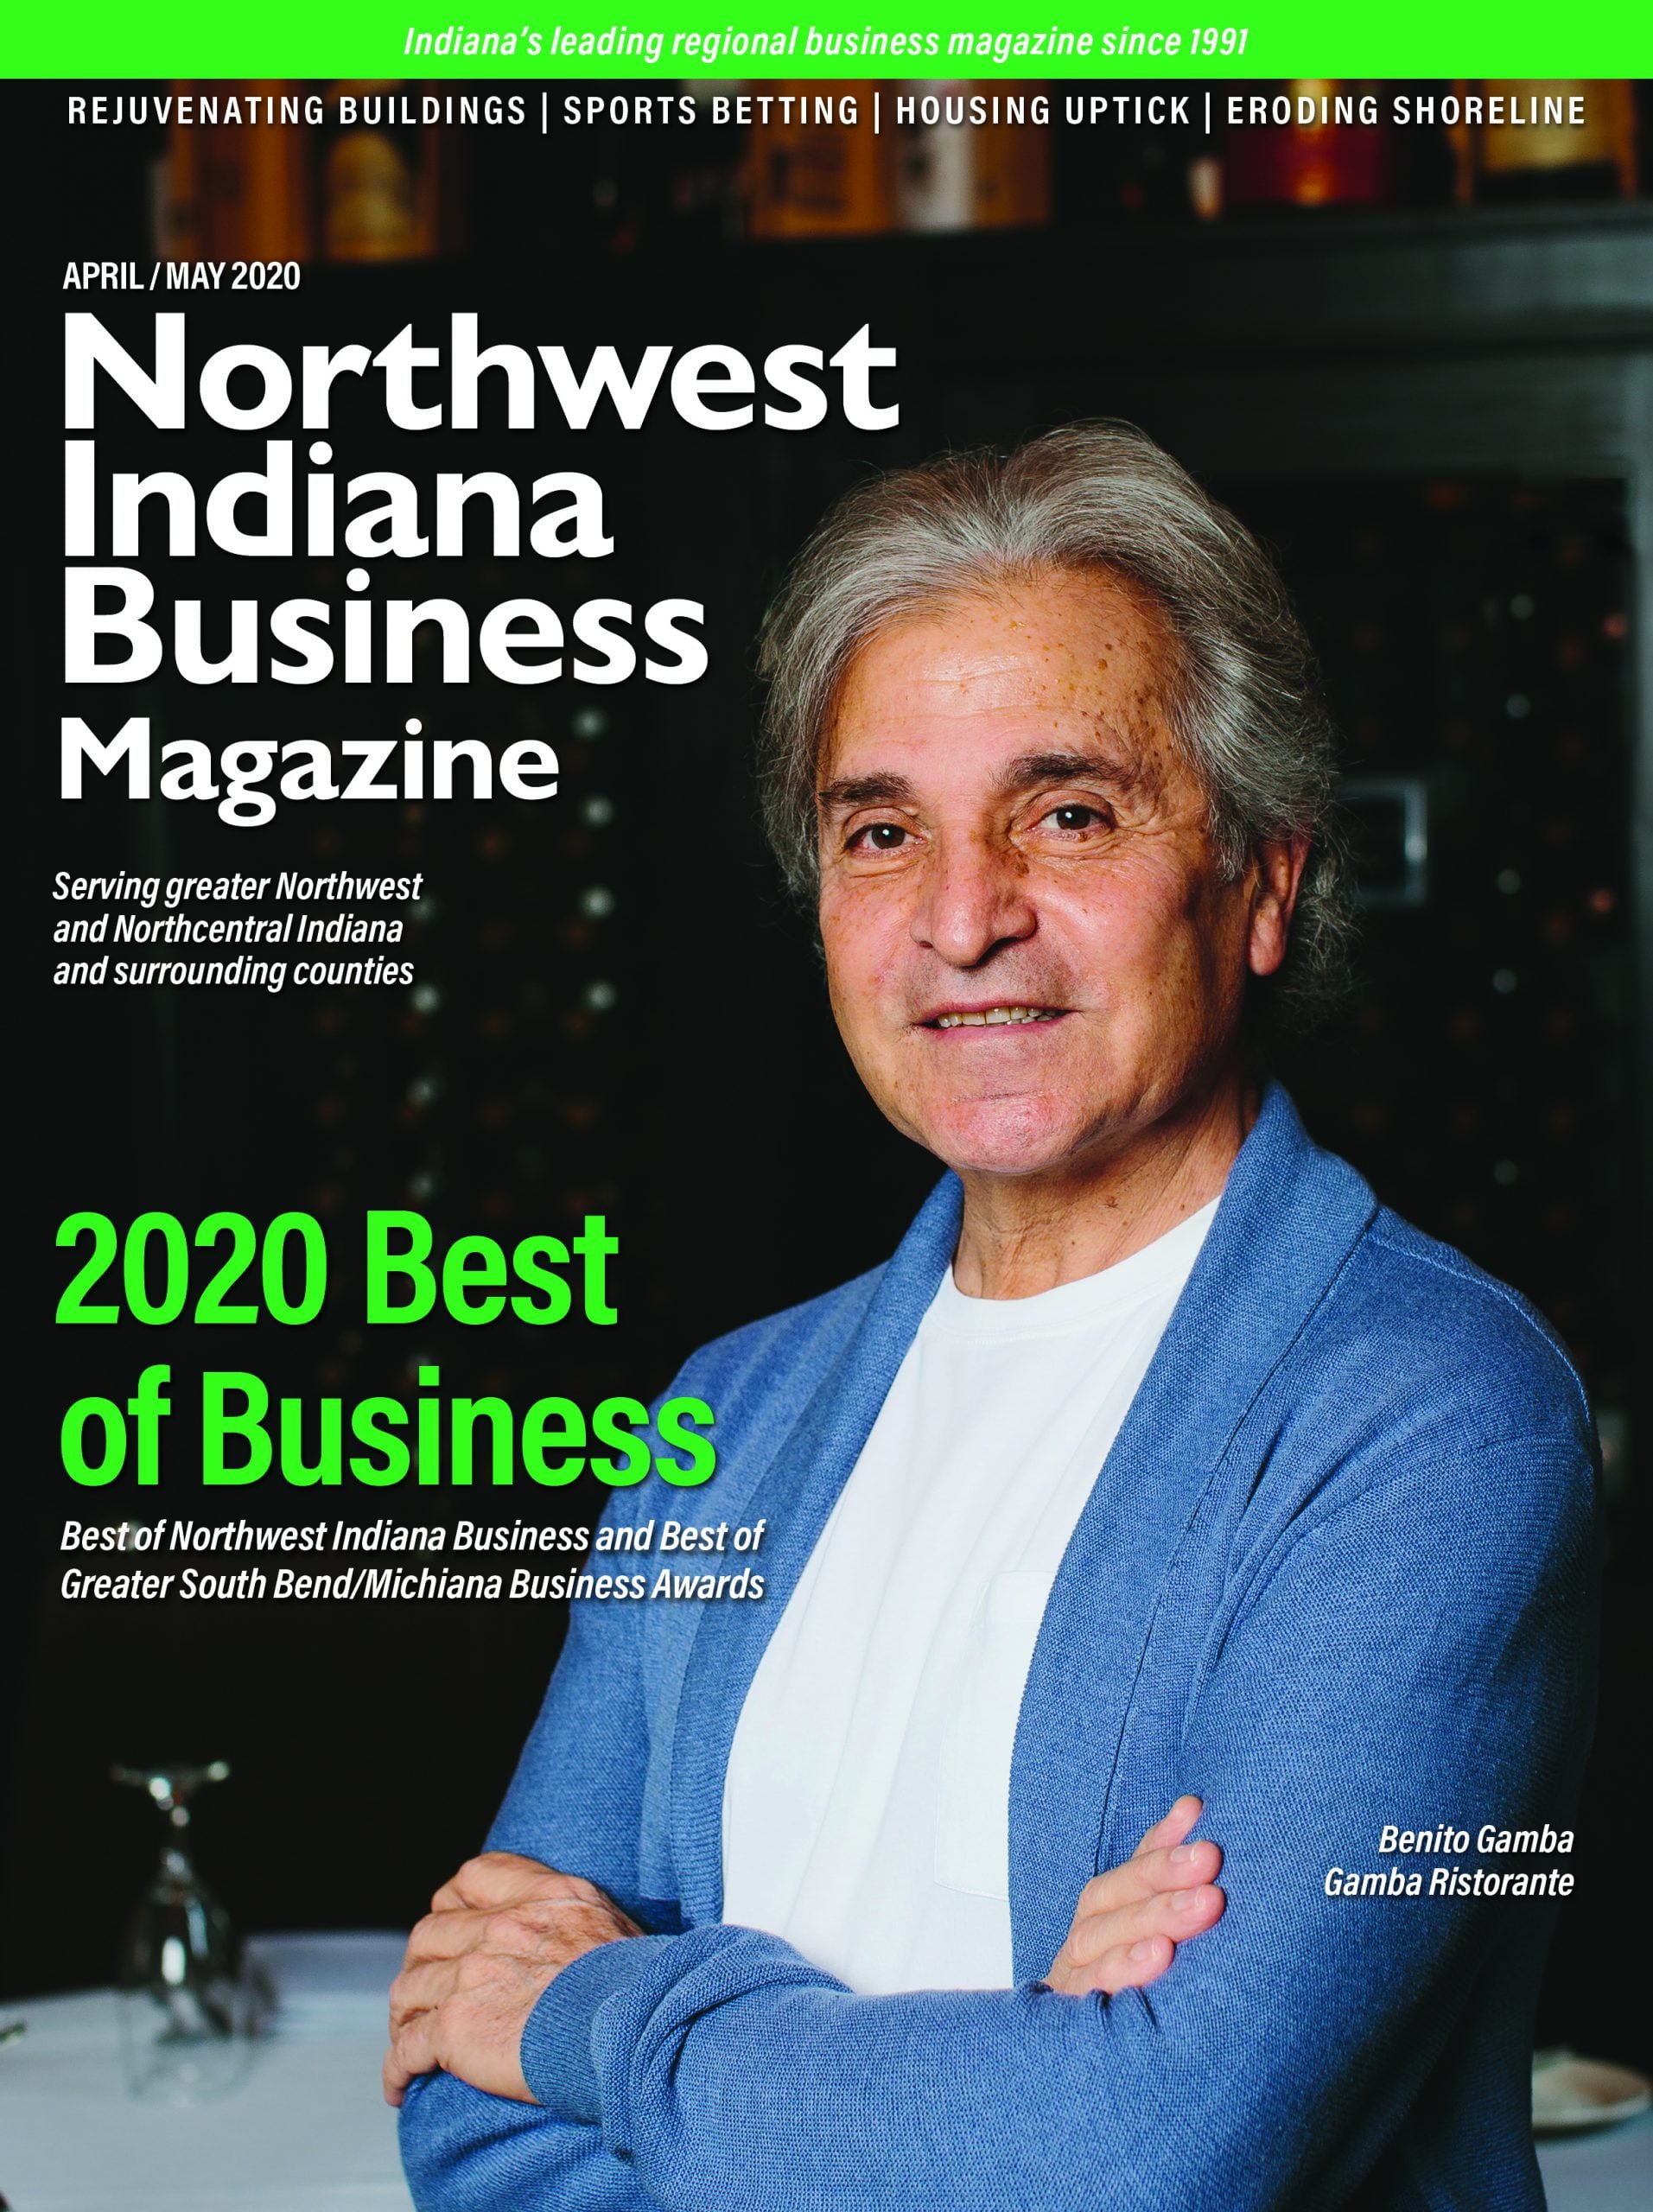 Northwest Indiana Business Magazine Apr-May 2020 issue